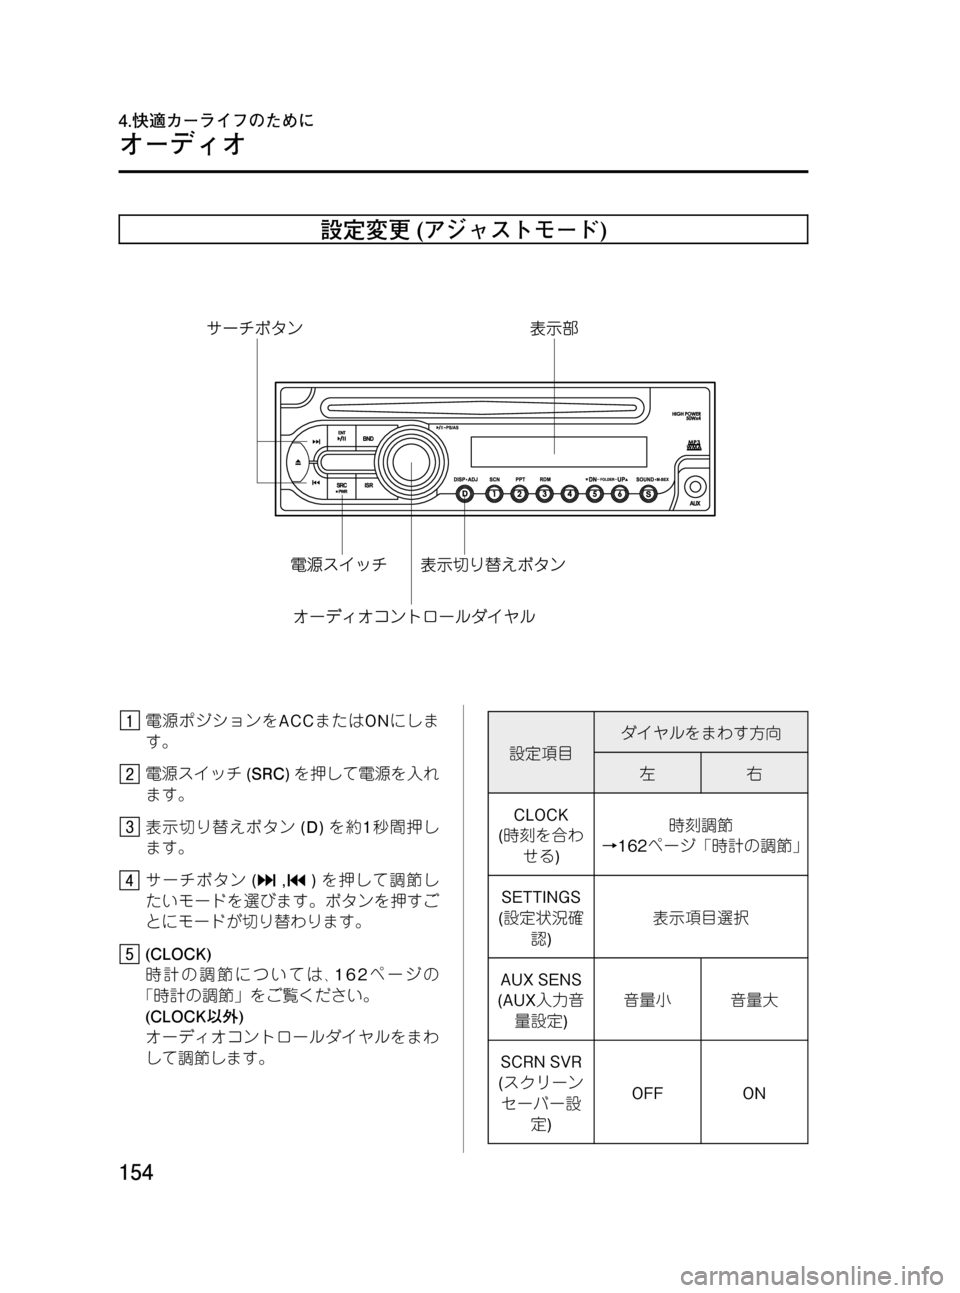 MAZDA MODEL BONGO VAN 2012  取扱説明書 (in Japanese) Black plate (154,1)
設定変更(アジャストモード)
電源ポジションをACCまたはONにしま
す。
電源スイッチ(SRC)を押して電源を入れ
ます。
表示切り替えボタ�